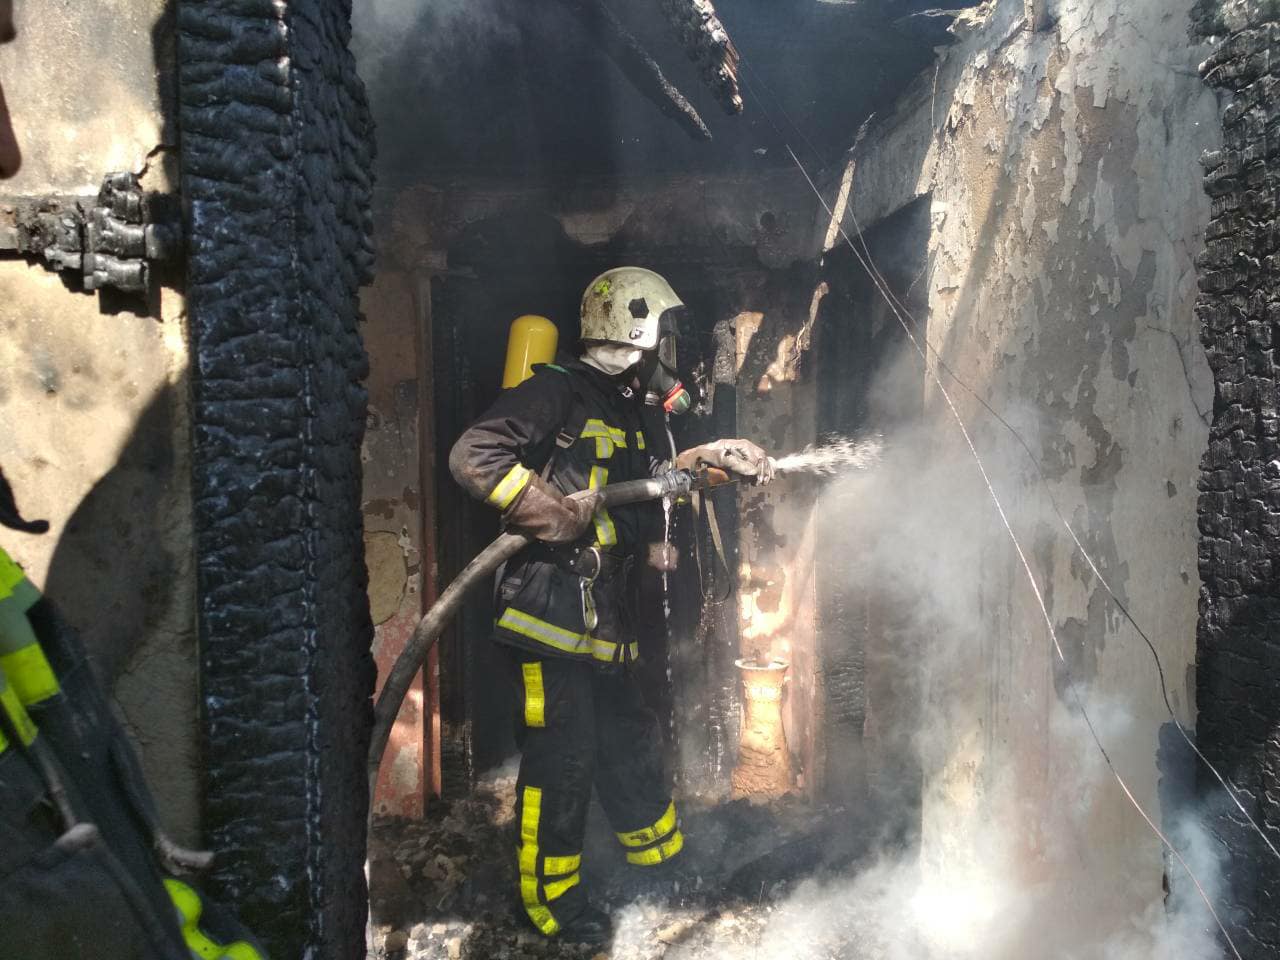 13 травня о 09:10 хустським рятувальникам надійшло повідомлення про пожежу у житловому будинку на вулиці Набережній, що в смт Вишково. 